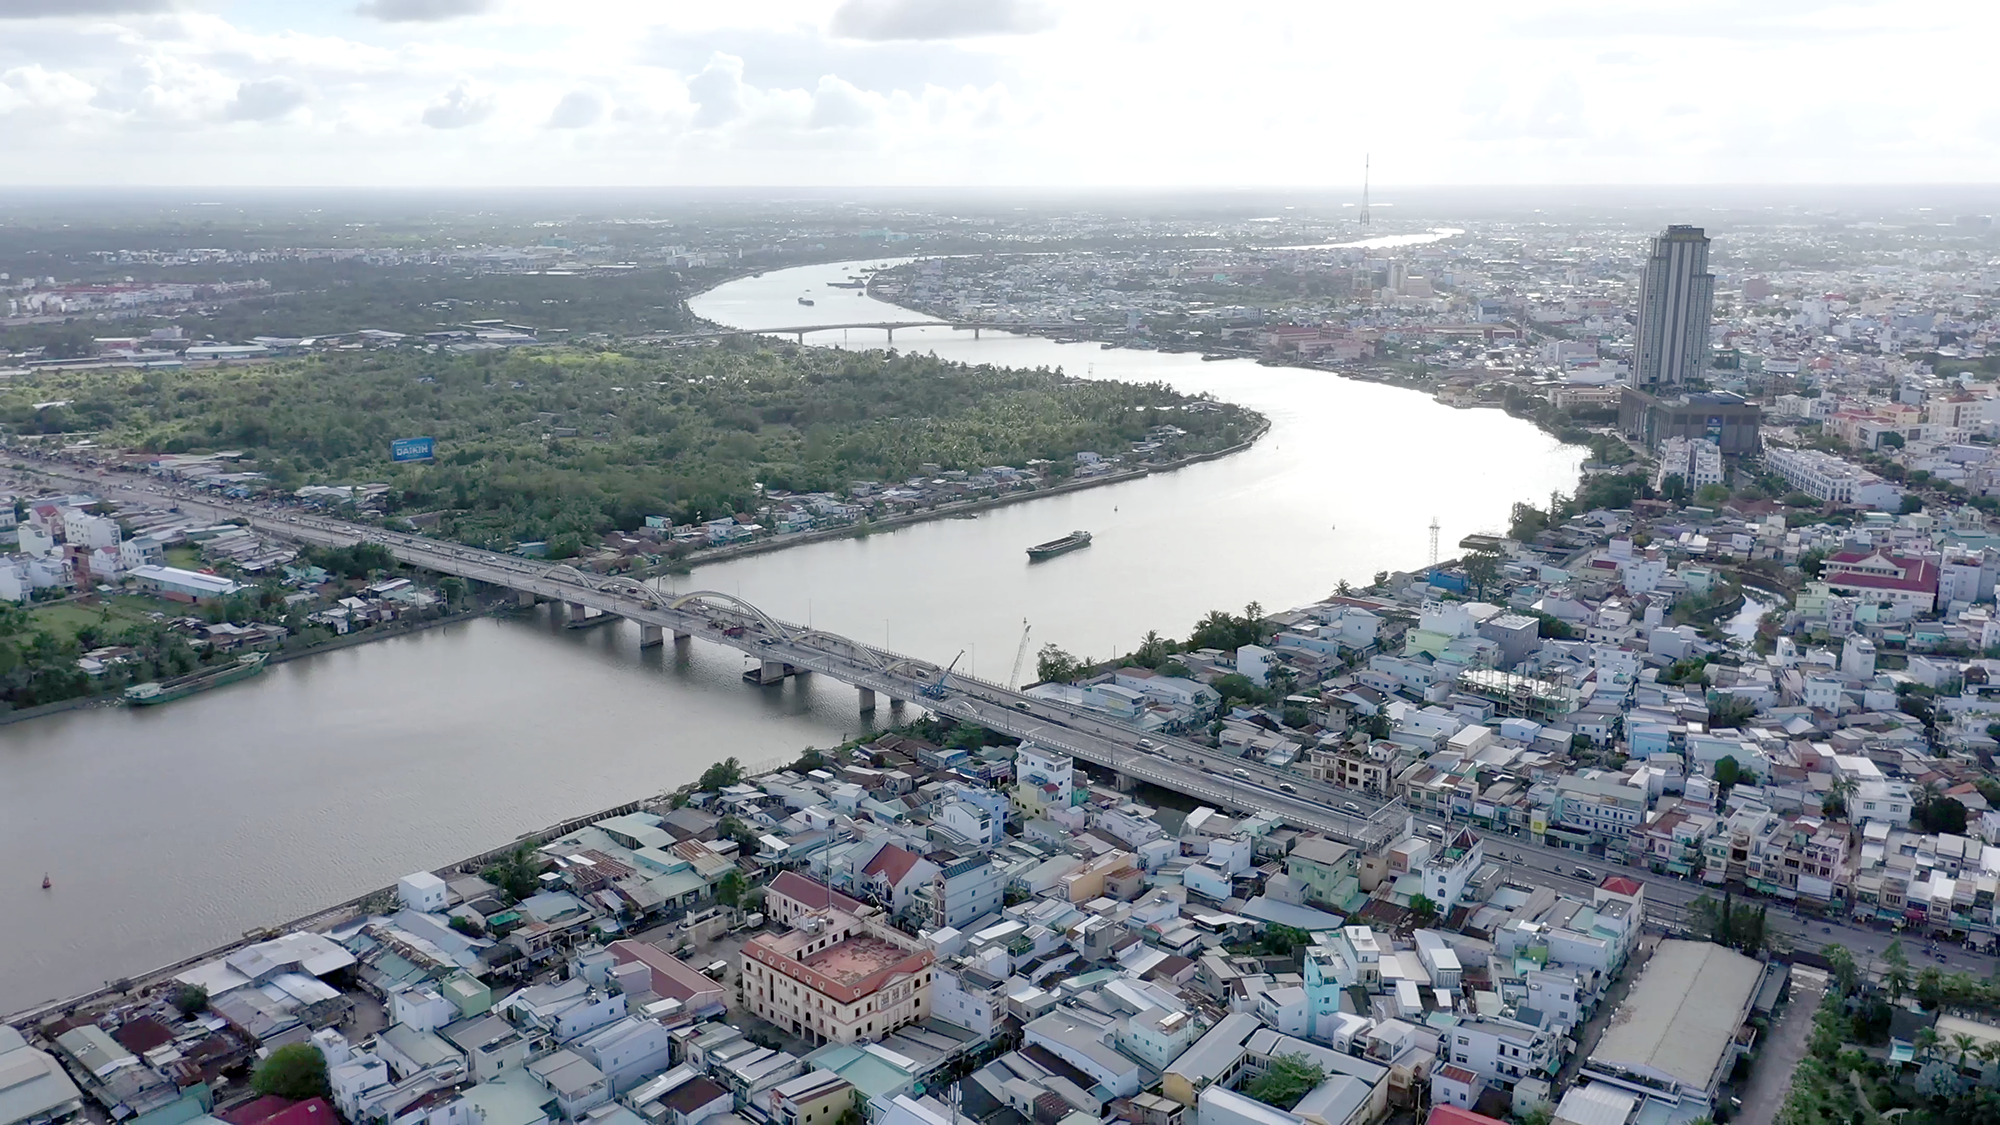 Bốn cây cầu “kéo” bến Ninh Kiều gần chợ nổi Cái Răng- Ảnh 2.